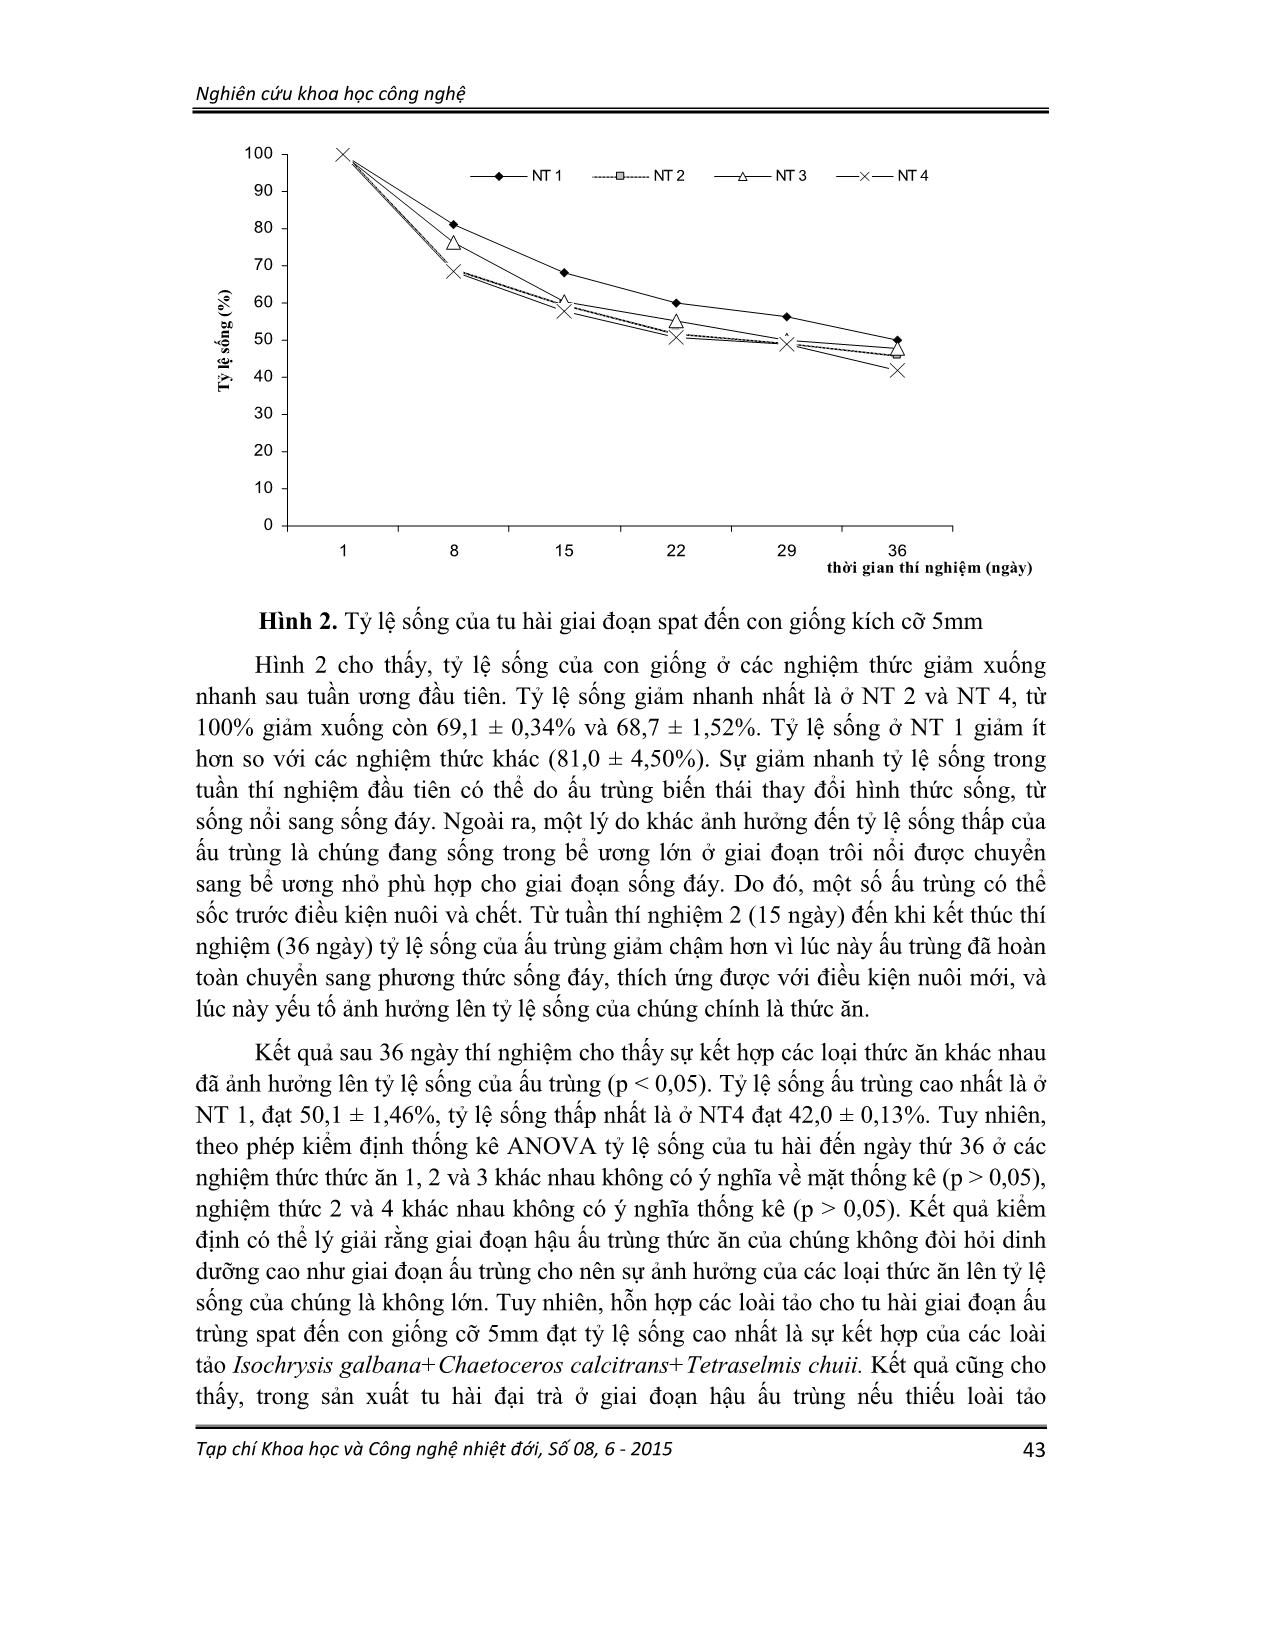 Ảnh hưởng của thức ăn, chế độ cho ăn lên sinh trưởng và tỷ lệ sống của tu hài (lutraria rhynchaena jonas, 1844) giai đoạn xuống đáy đến kích cỡ 5mm trang 6